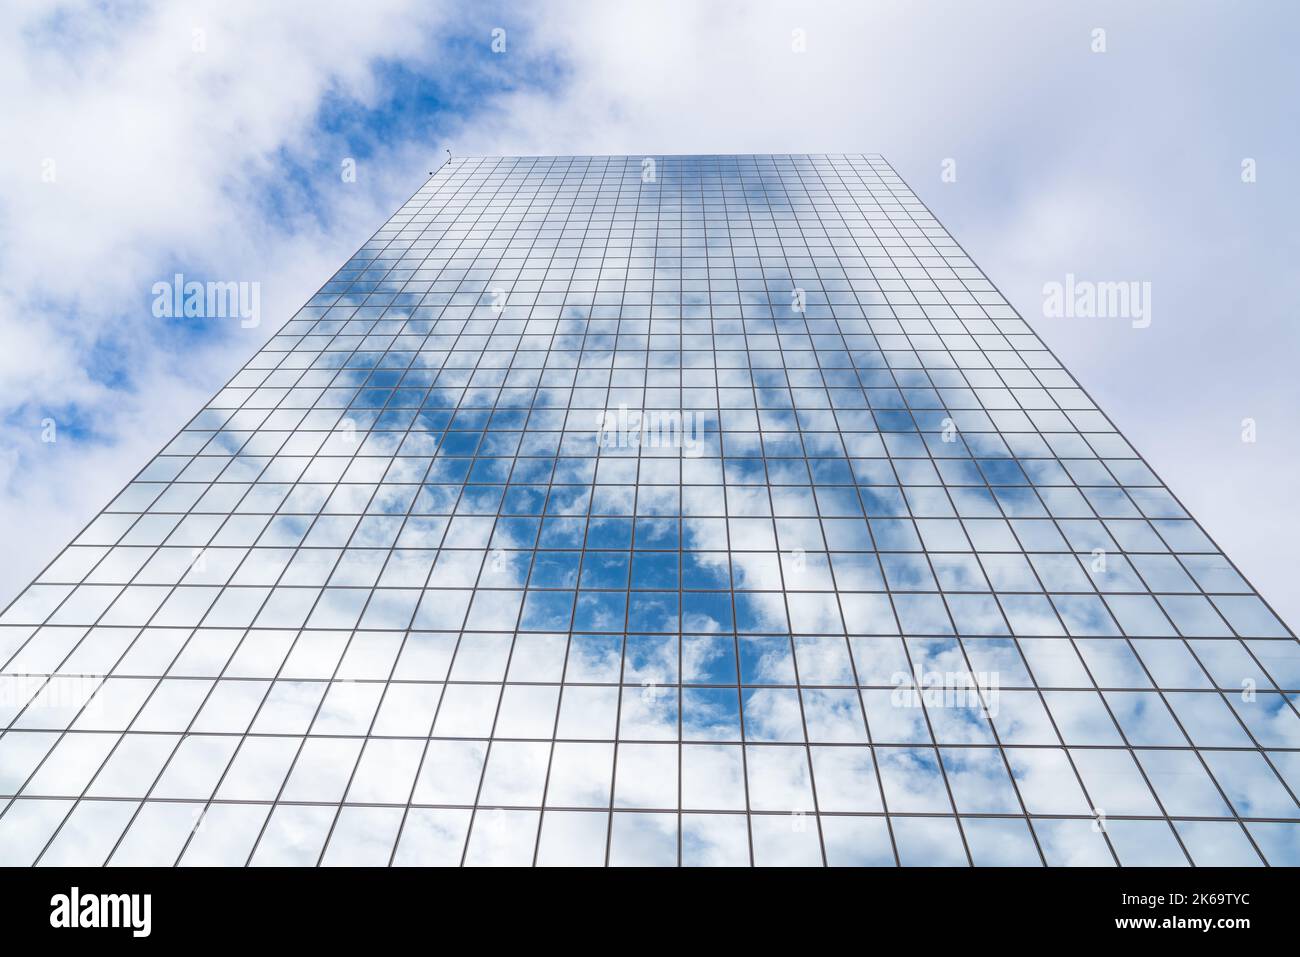 Le nuvole e il cielo blu si riflettono su un alto grattacielo in vetro a specchio Foto Stock